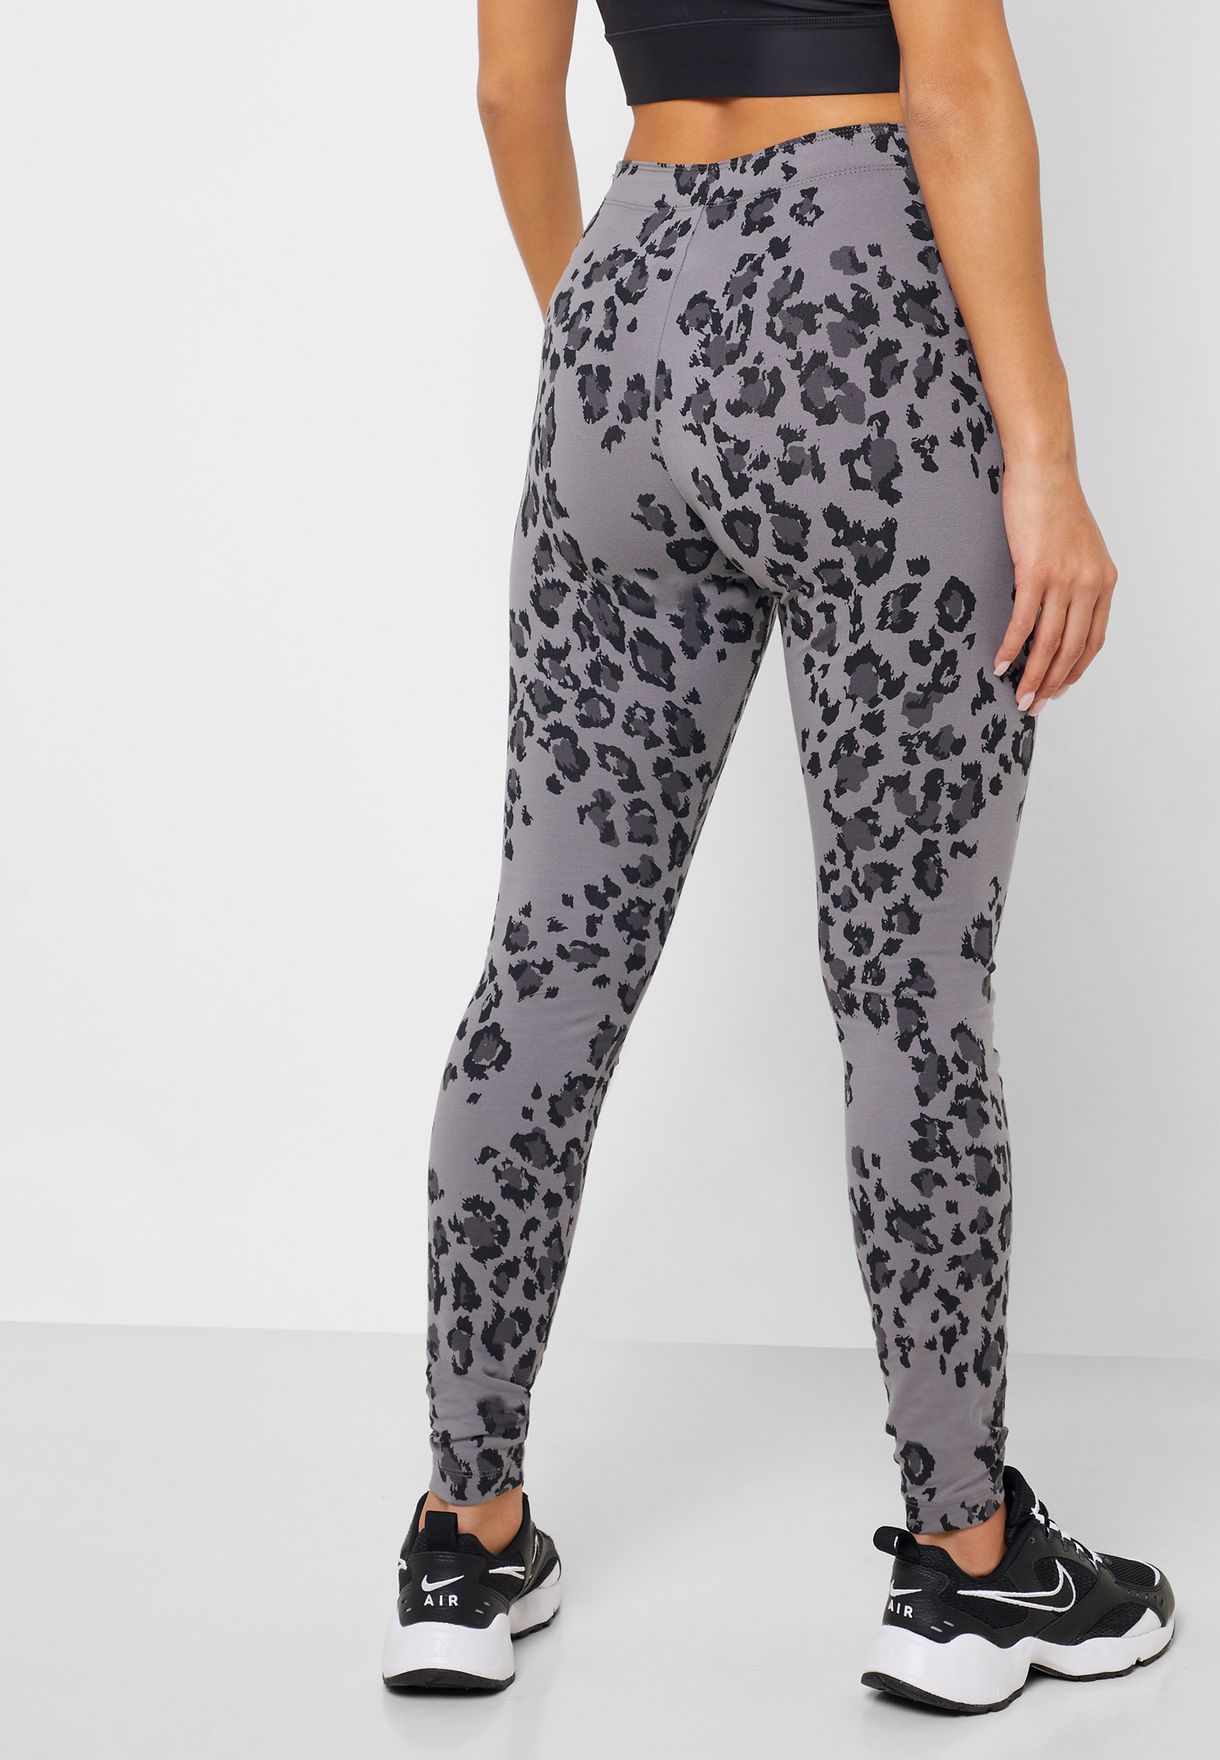 nike leopard leggings grey